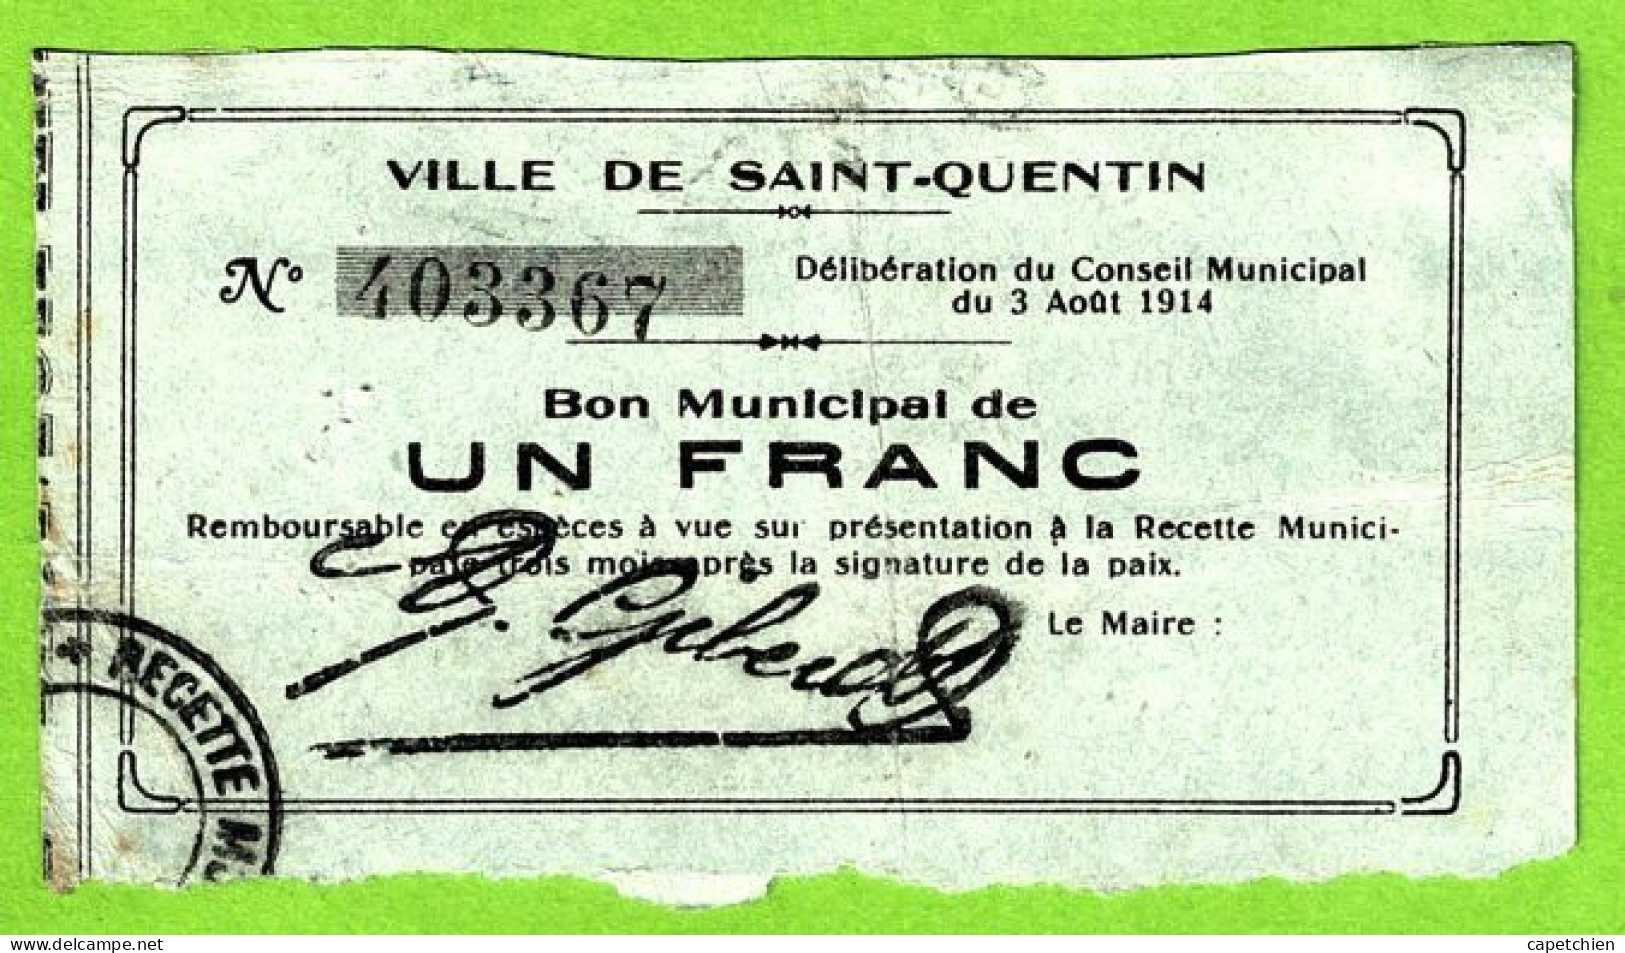 FRANCE / VILLE De St QUENTIN  / BON MUNICIPAL De 1 FRANC / 3 AOUT 1914 / 403367 / SERIE - Handelskammer